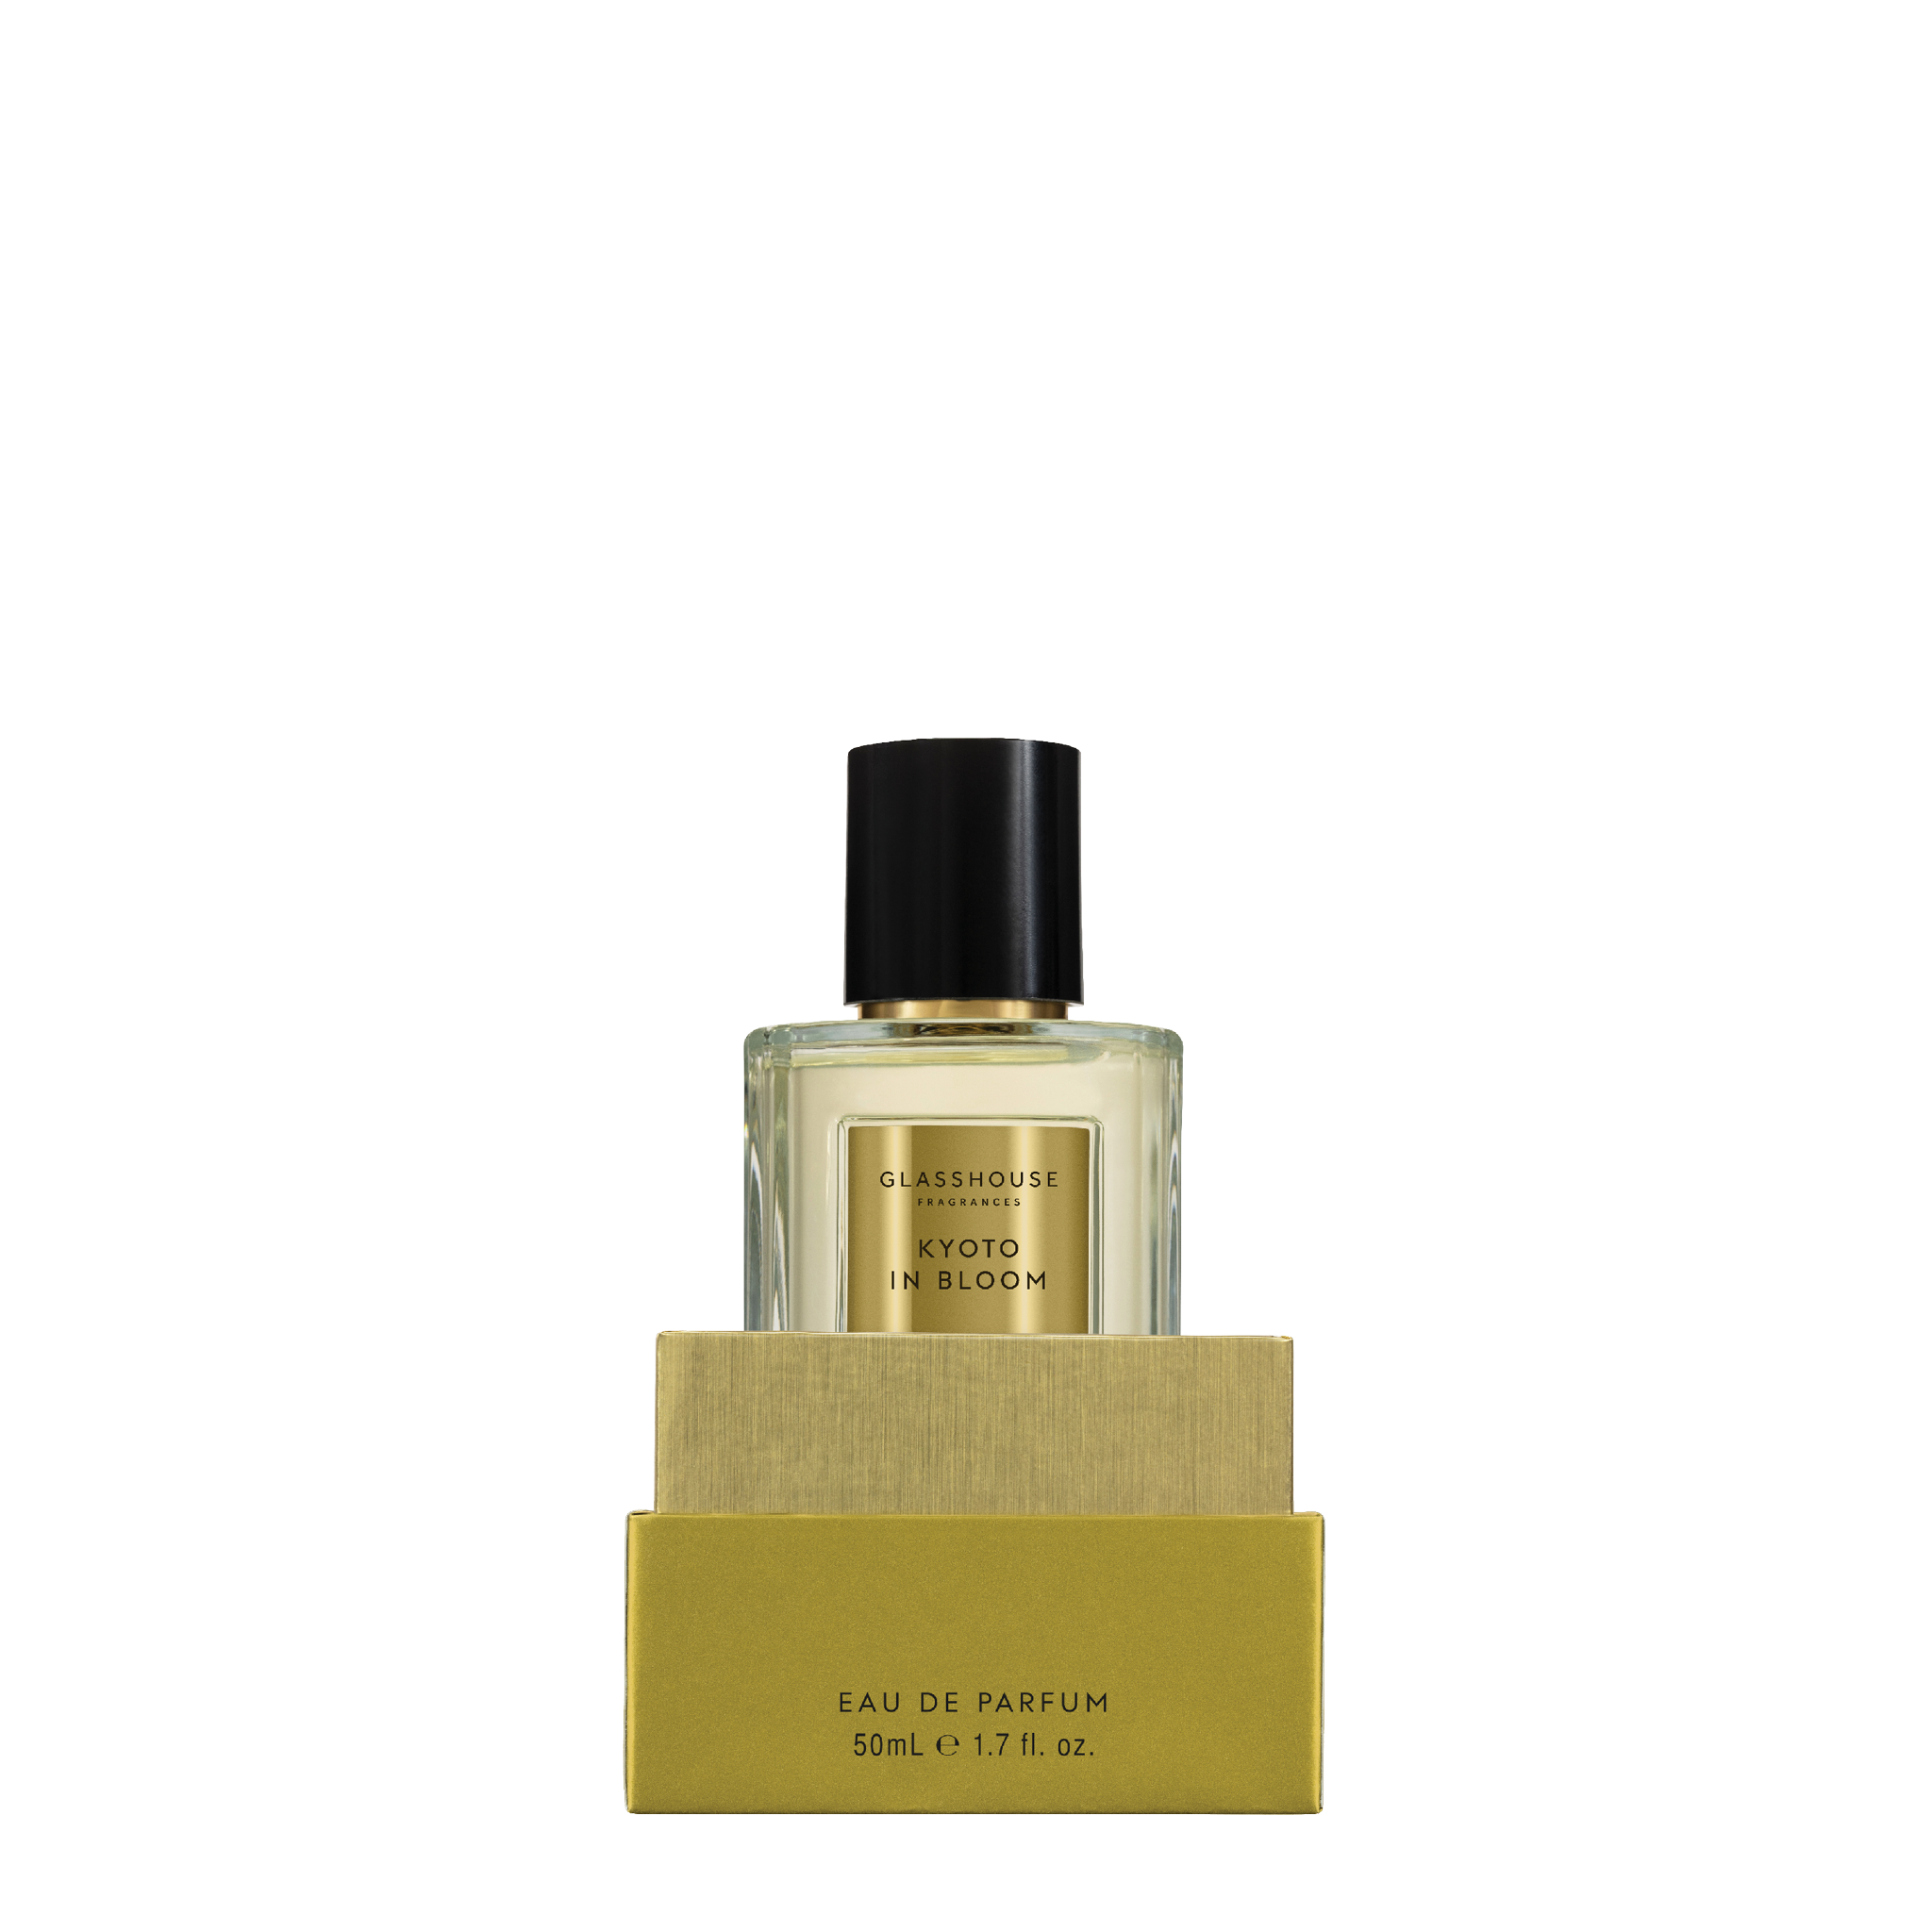 Kyoto in Bloom - 50mL Eau de Parfum | Glasshouse Fragrances ...